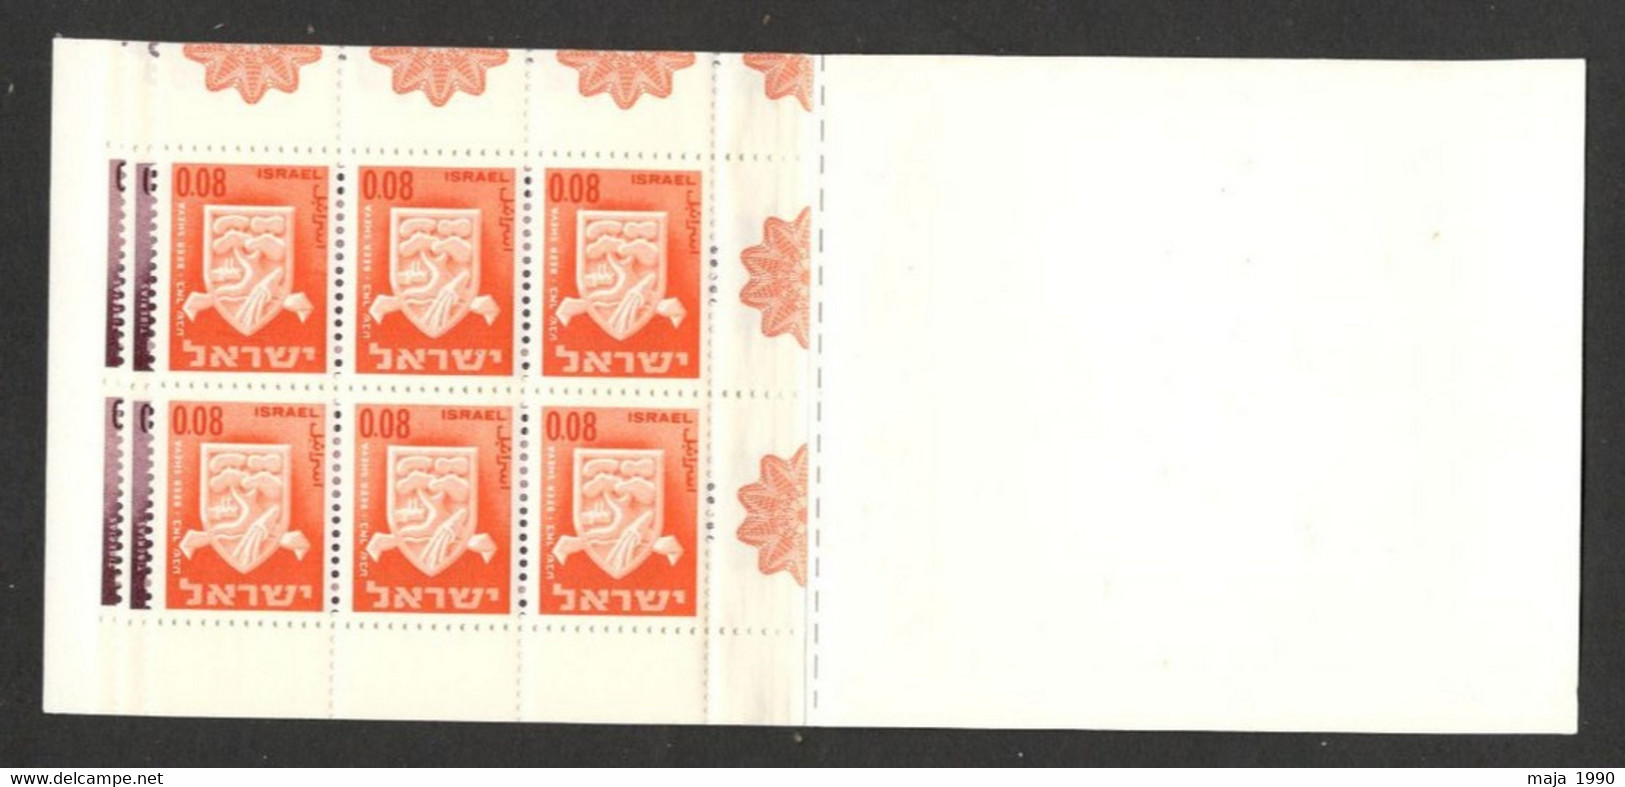 ISRAEL - MNH BOOKLET - DEFINITIVE STAMPS - 1965. - Carnets